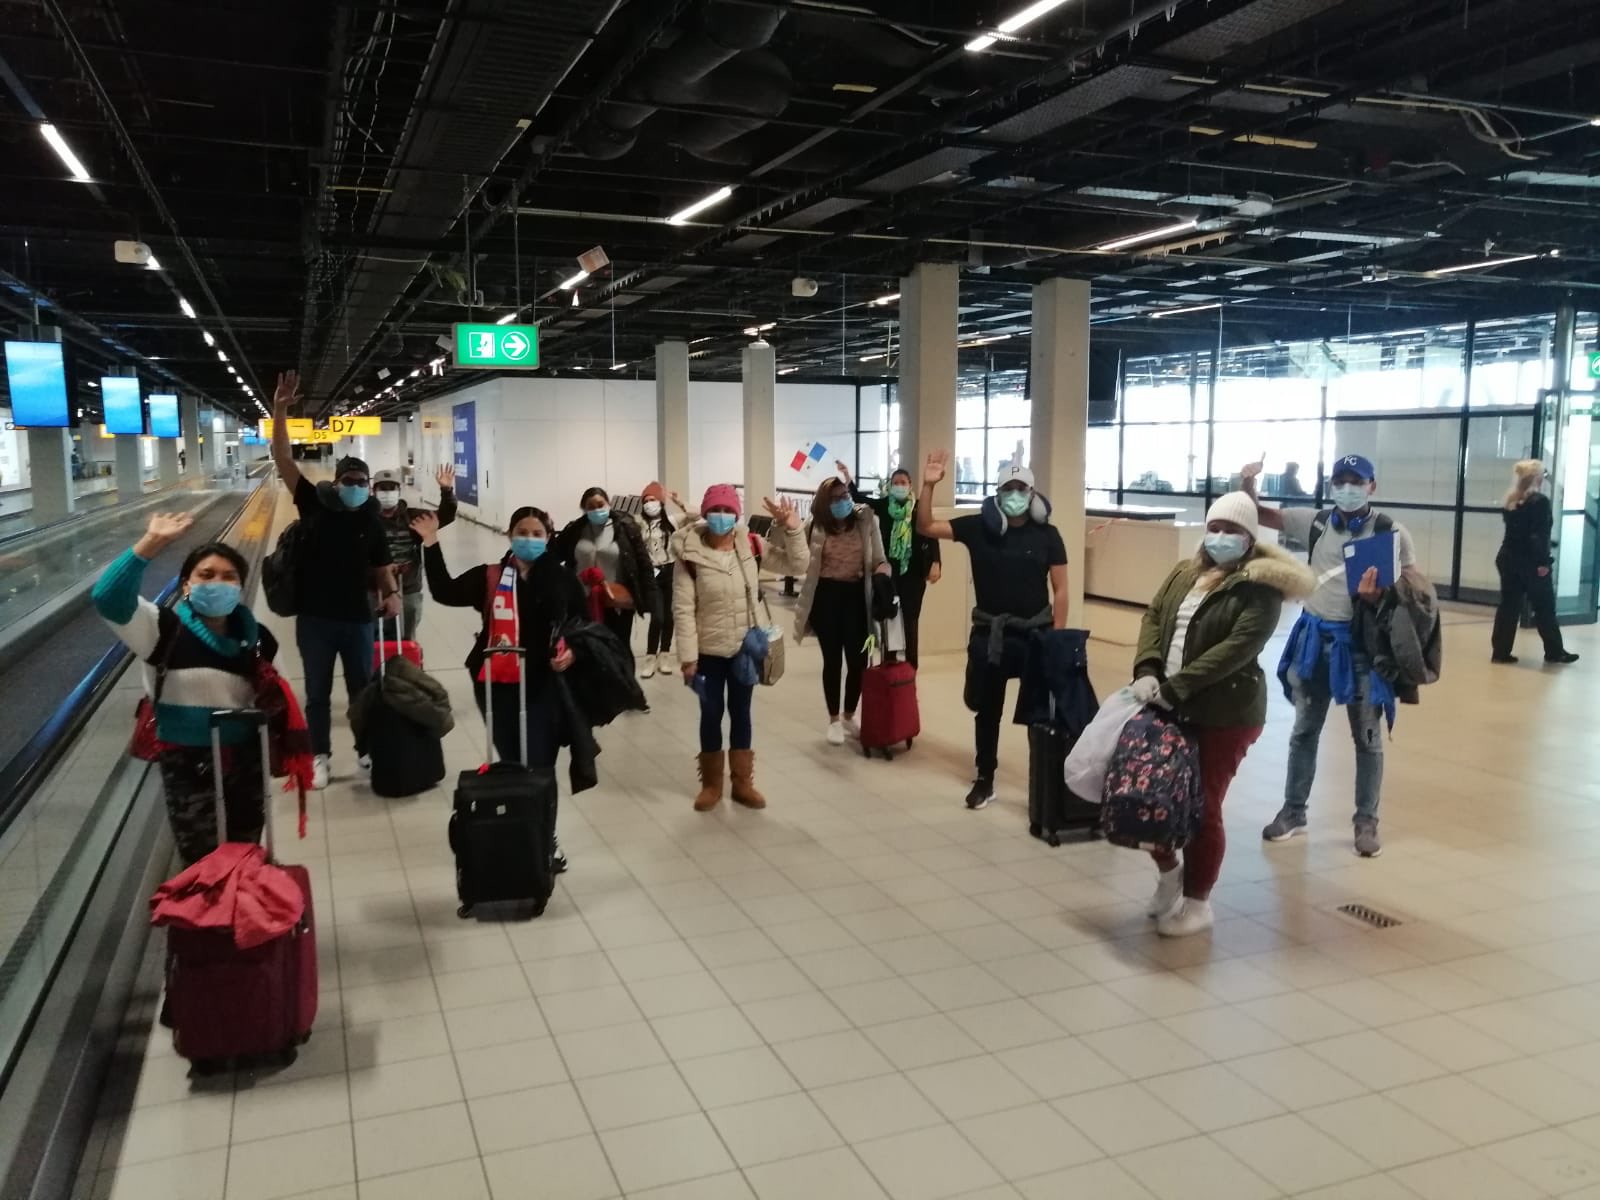 Cancillería panameña gestionó vuelo para que 227 varados en Europa regresaran a su país